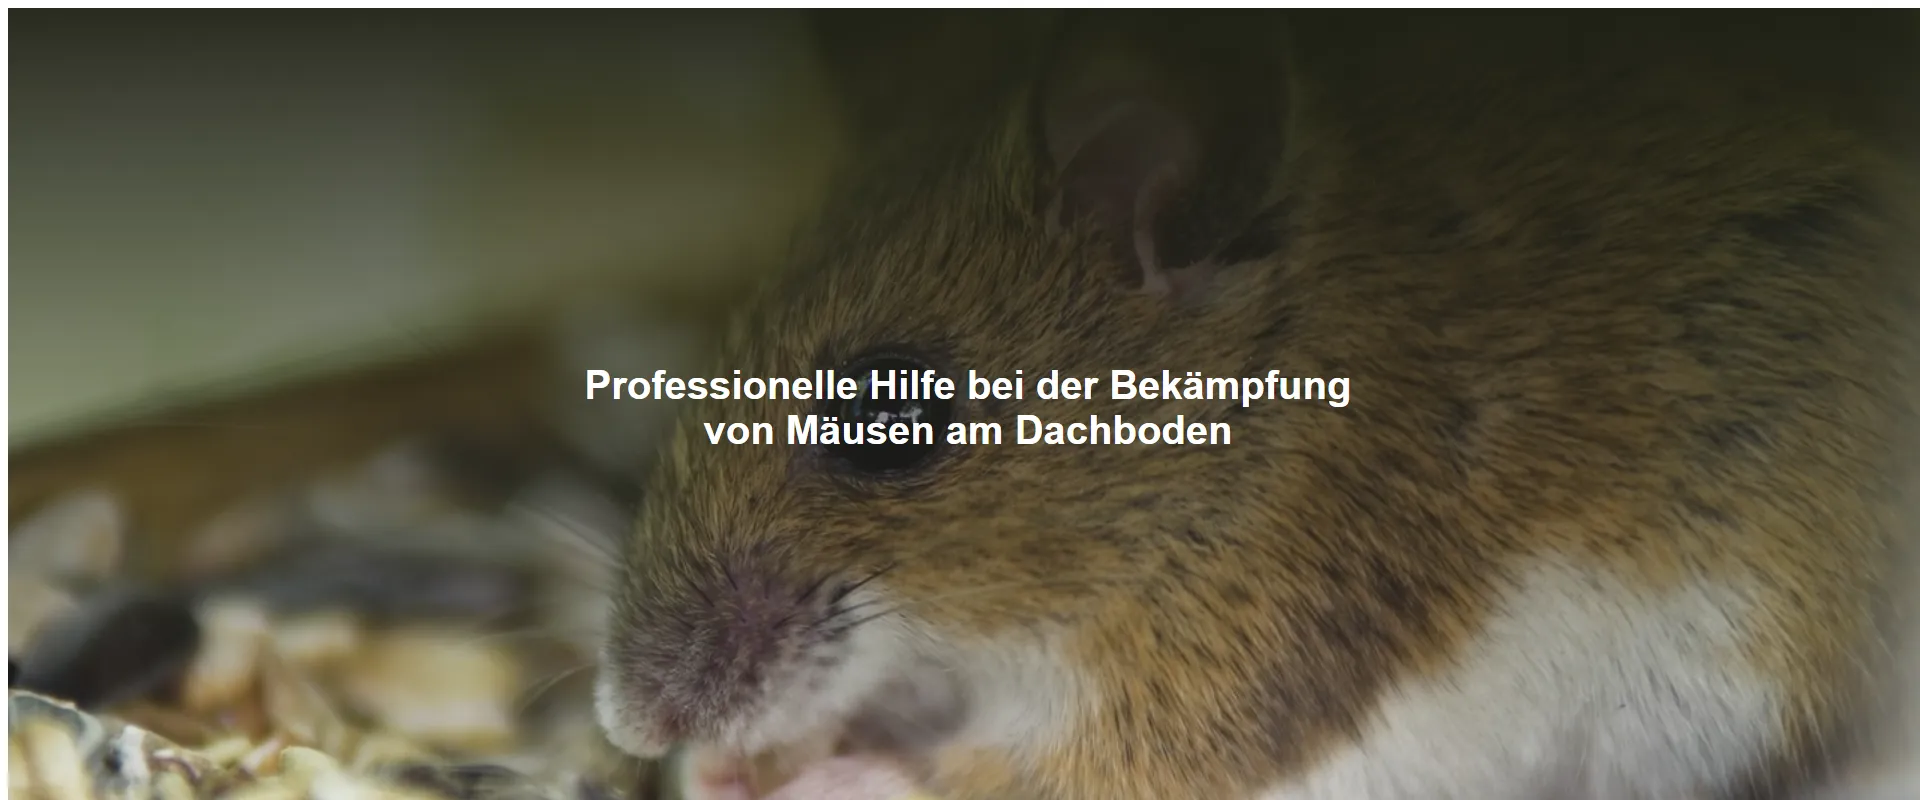 Professionelle Hilfe bei der Bekämpfung von Mäusen am Dachboden